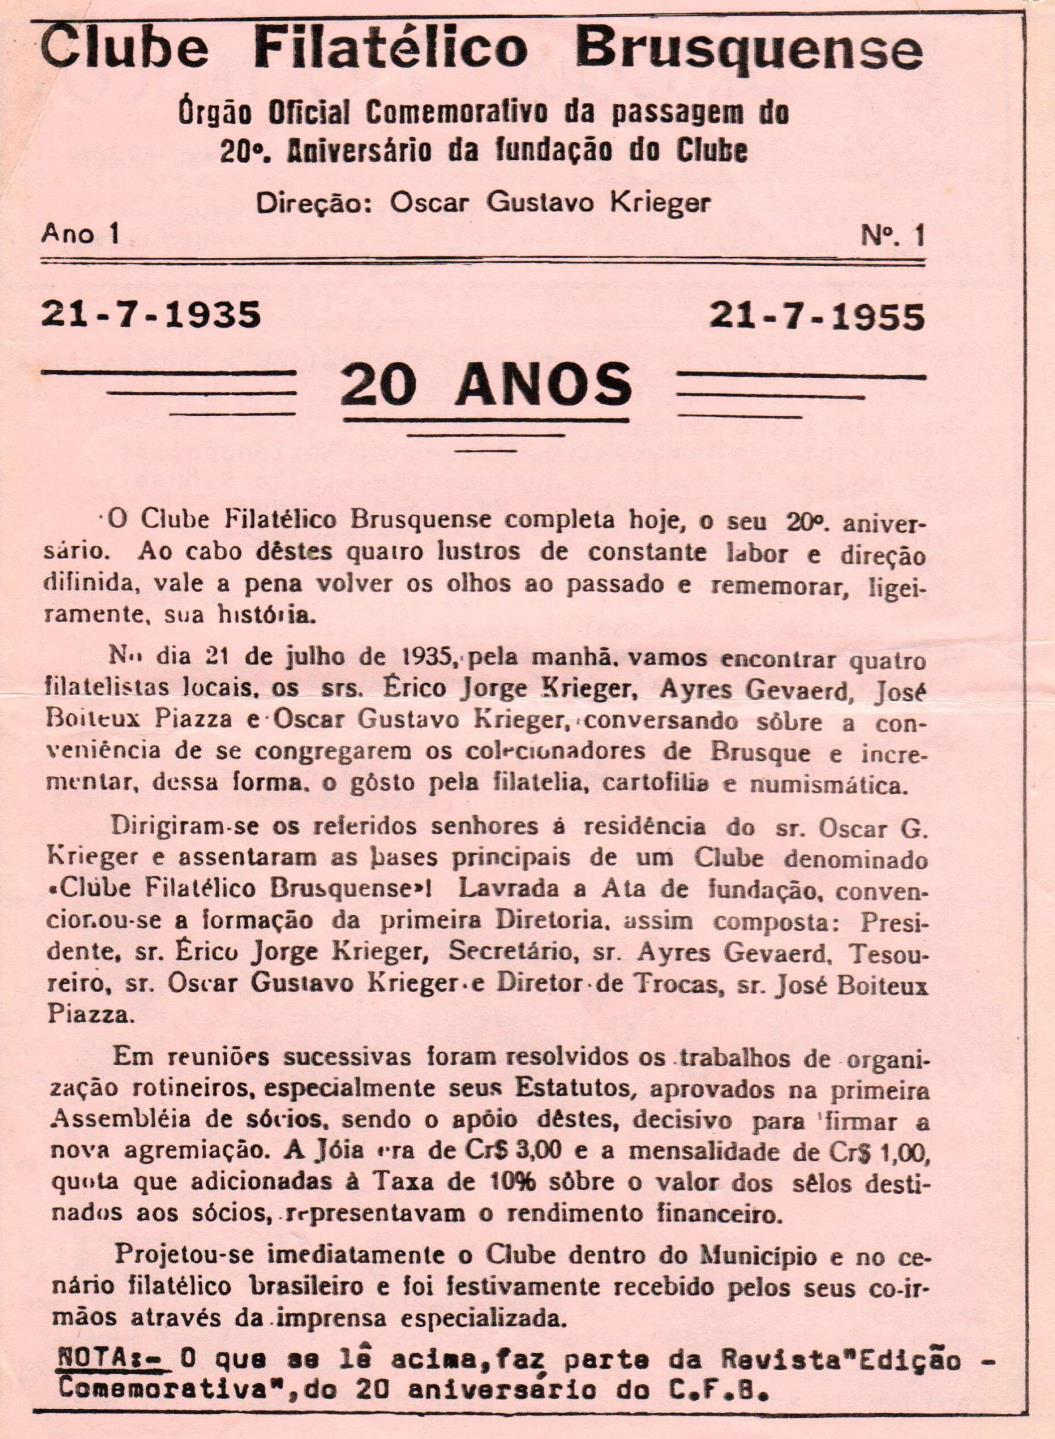 FUNDAÇÃO DO CLUBE FILATÉLICO BRUSQUENSE Pela importância histórica e para preservar a memória, publicamos o texto